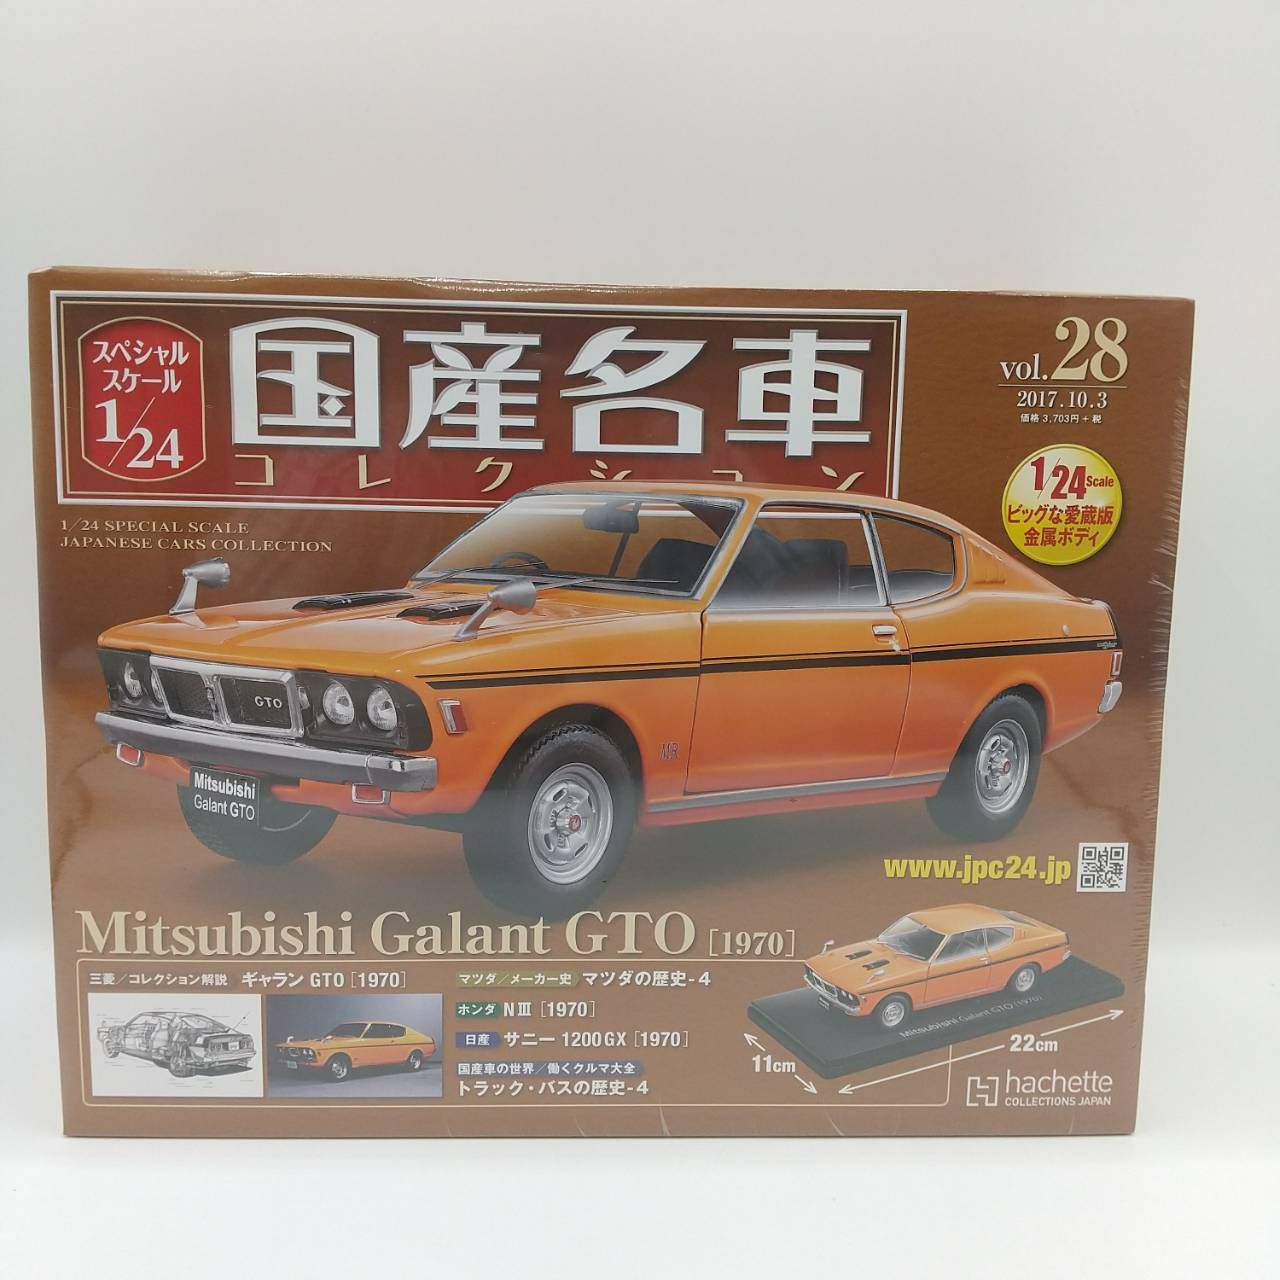 国産名車コレクション1/24 vol. 28 ギャラン GTO 1970 ミニカー / Mitsubishi Galant GTO アシェット -  メルカリ